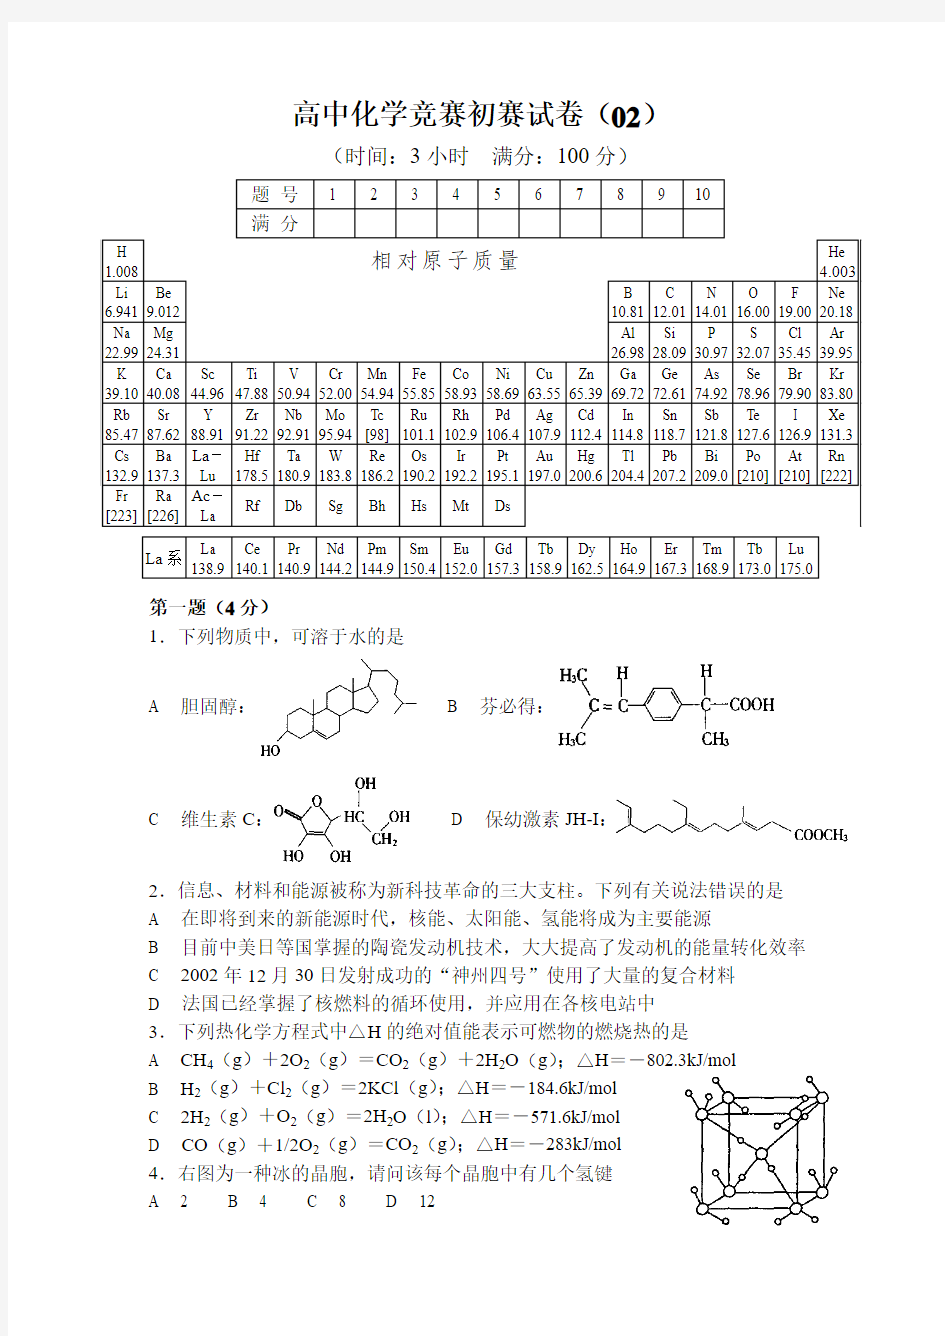 高中化学竞赛初赛试卷(02)